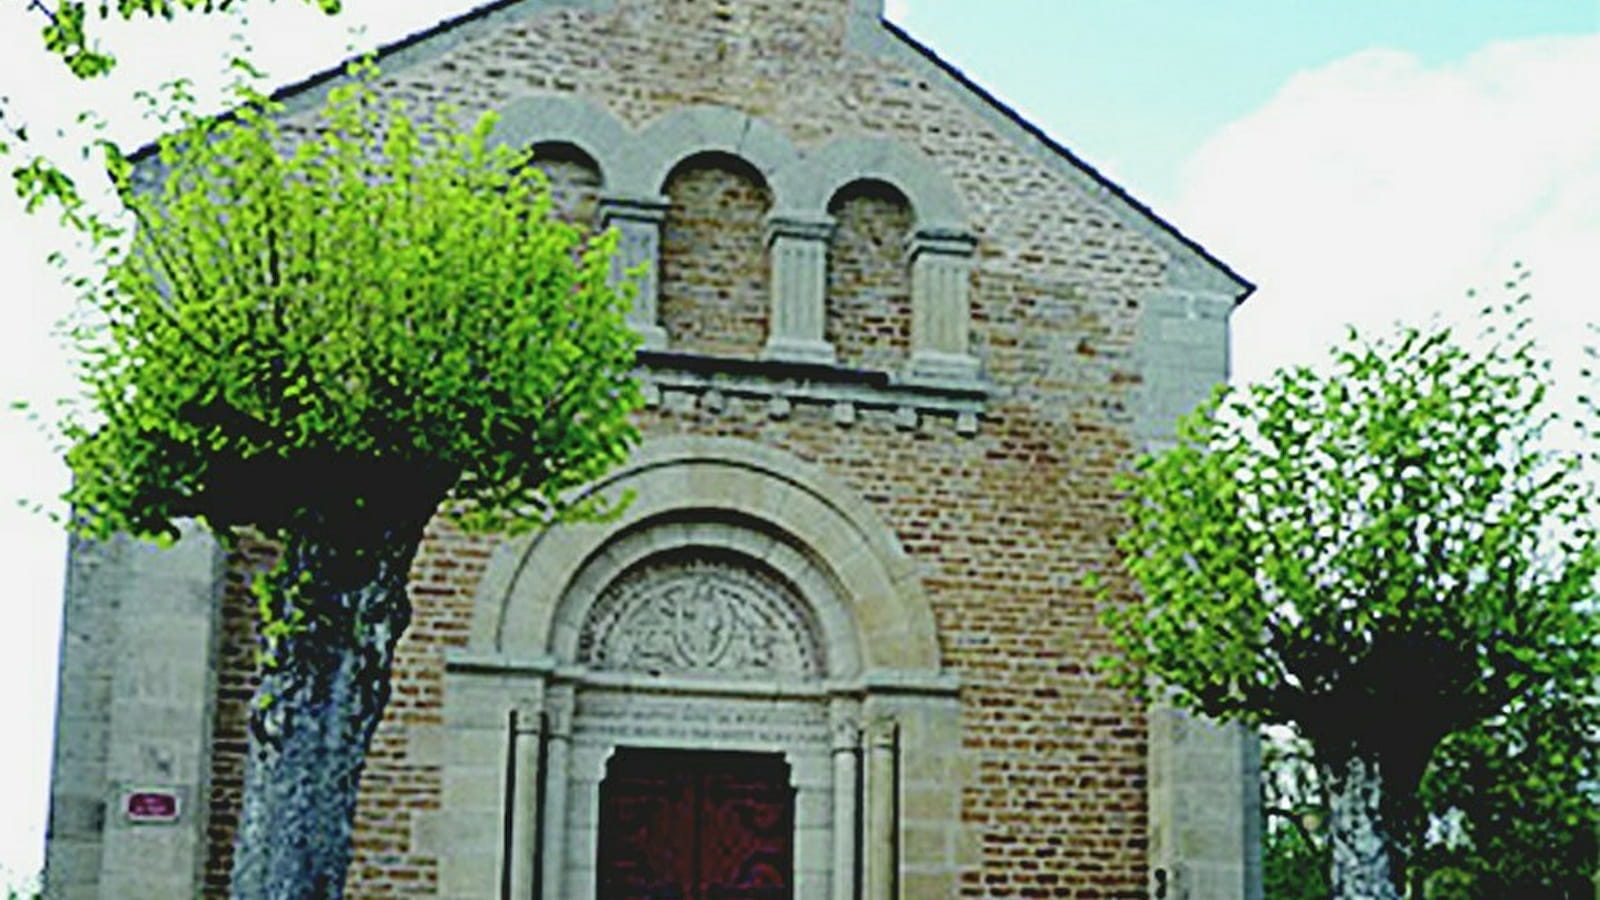 Eglise de Saint-Maurice-lès-Couches